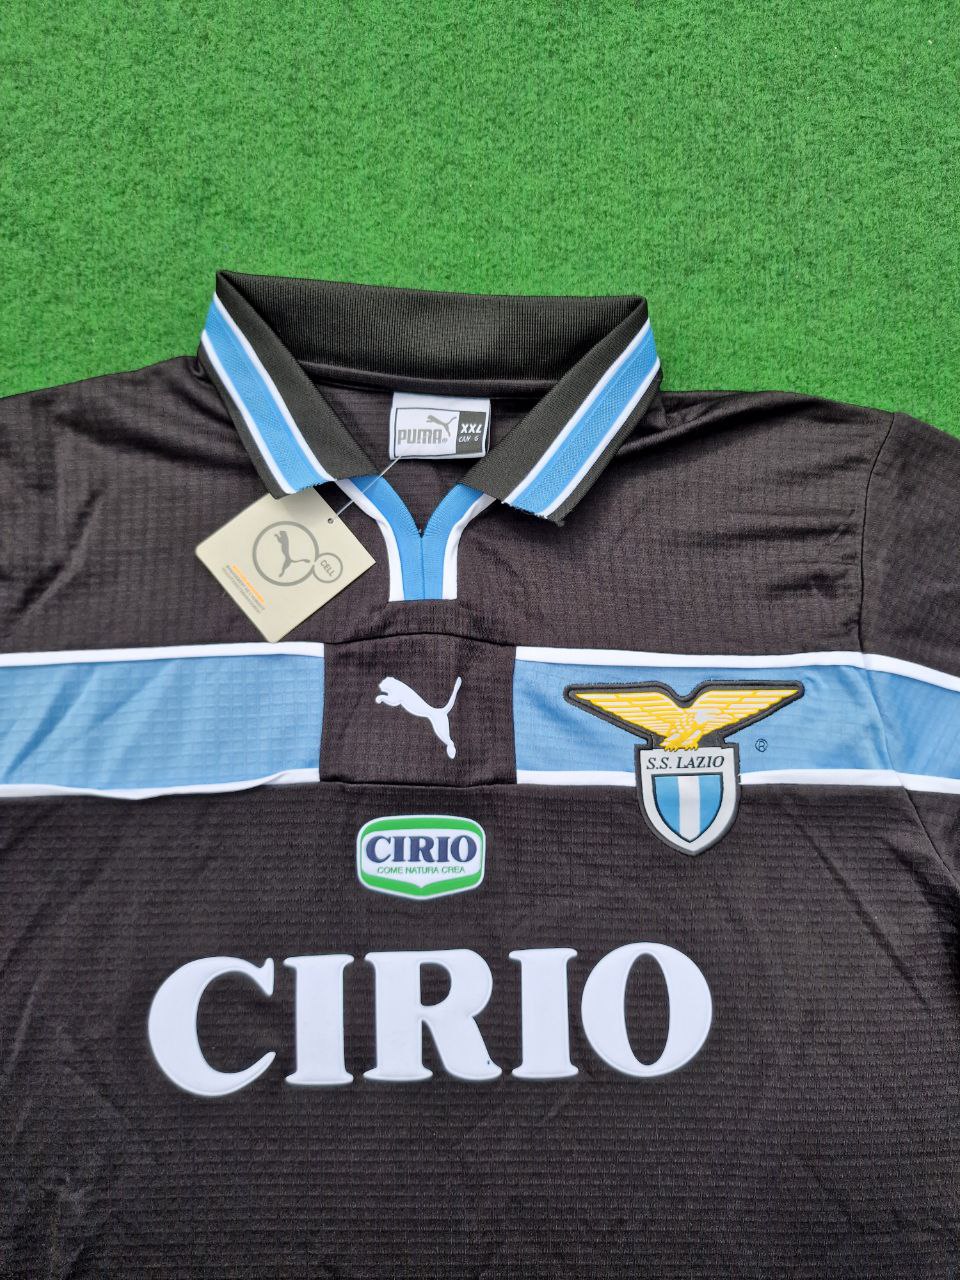 2000 Lazio Black Retro Jersey